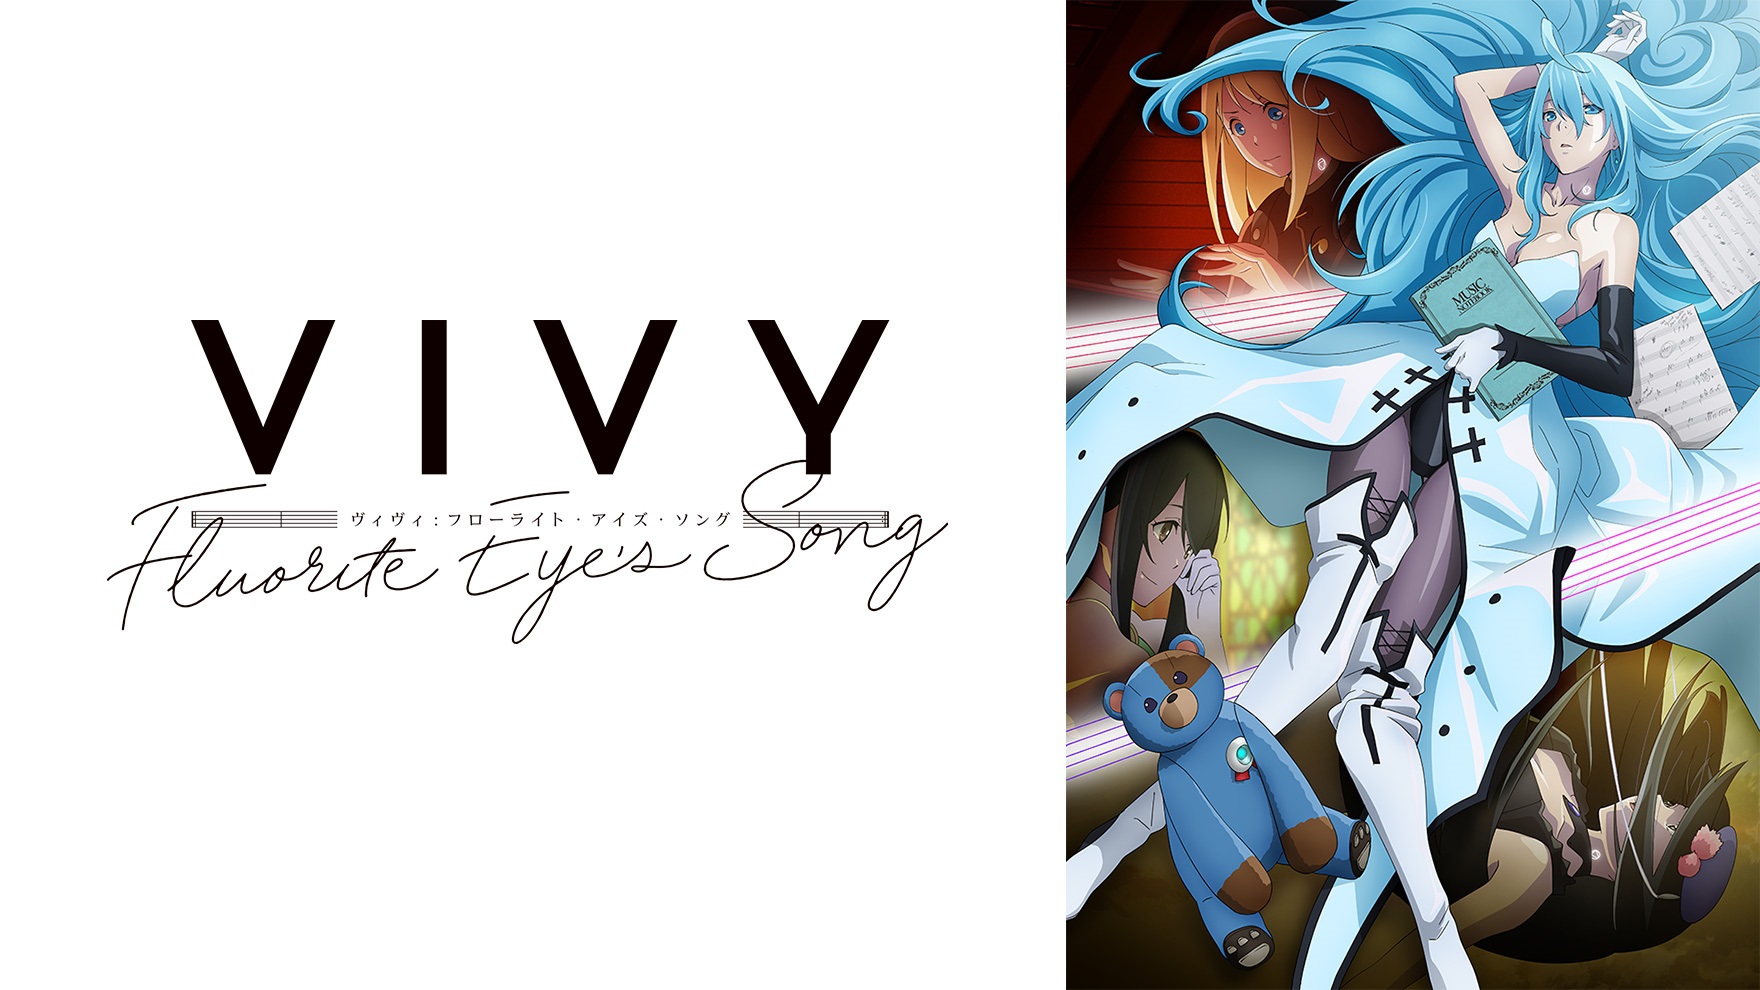 Виви: Песнь флюоритового глаза, Vivy: Fluorite Eye's Song - для новичков в аниме